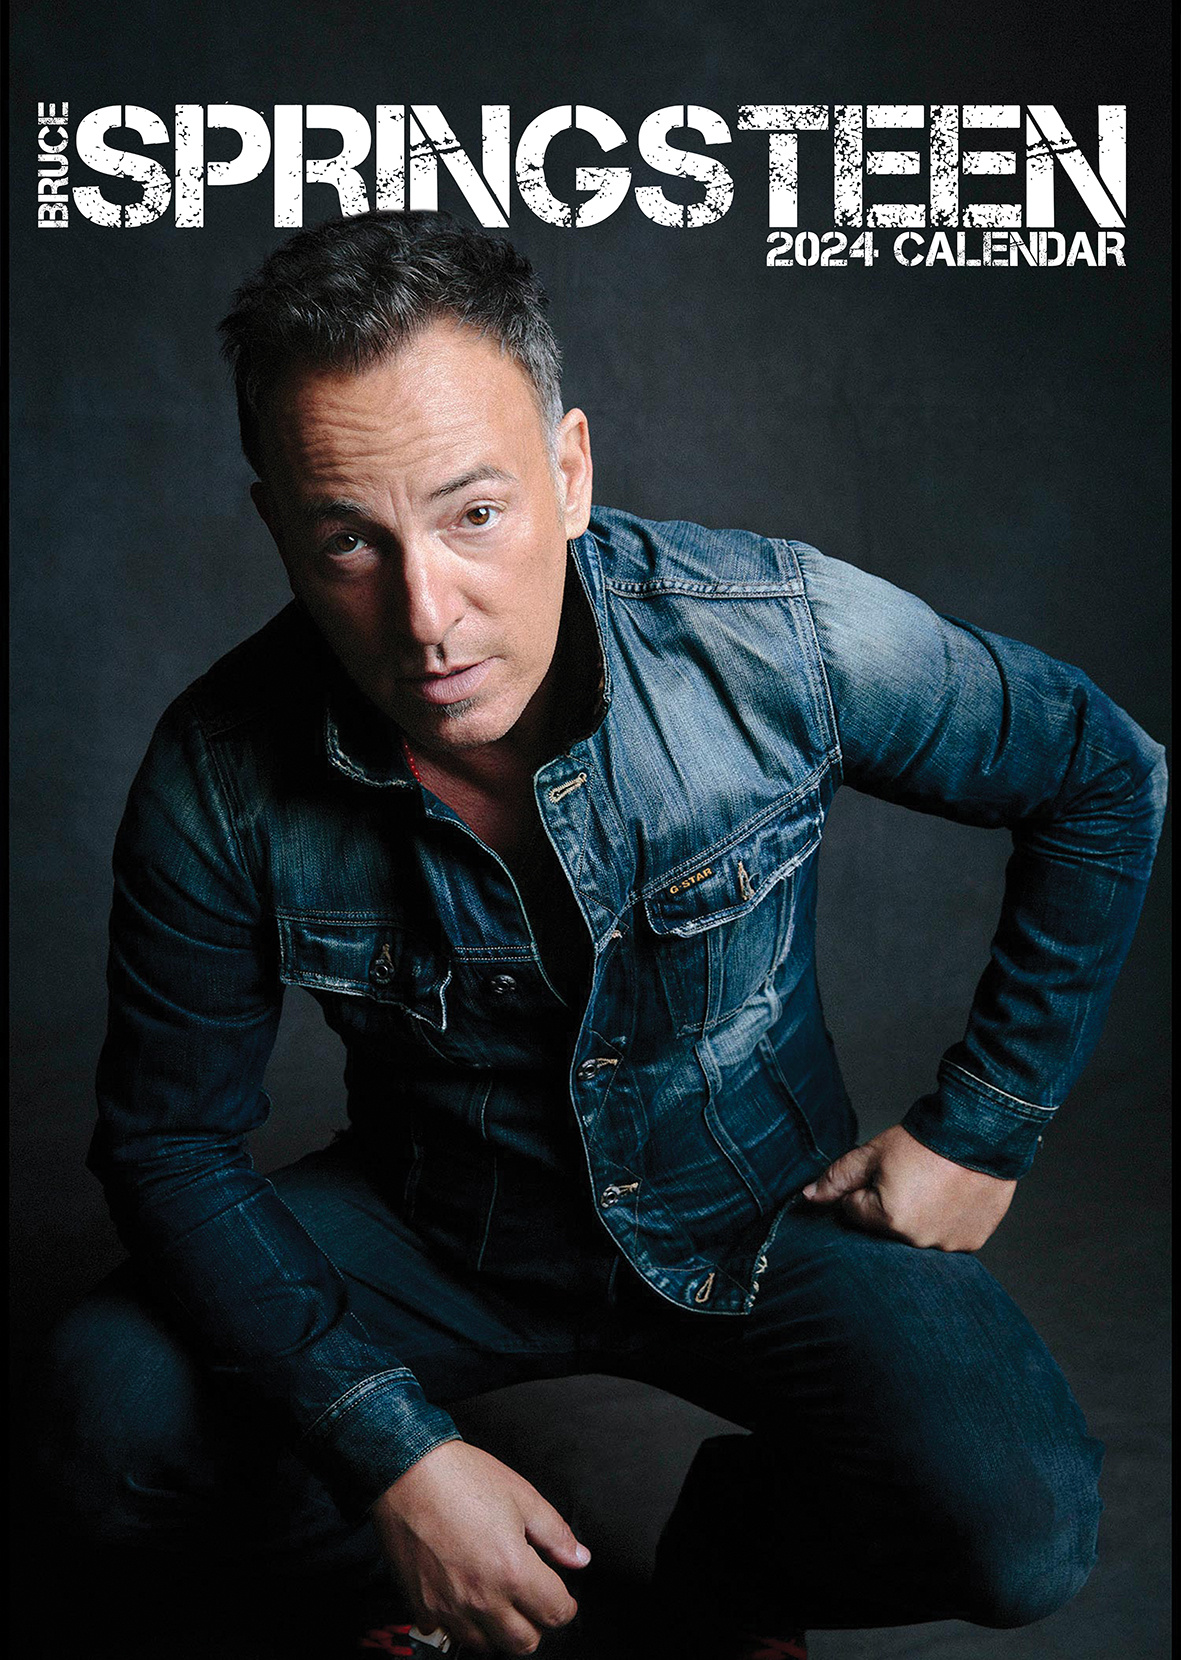 Bruce Springsteen Kalender 2024 Kopen? Bestel eenvoudig online